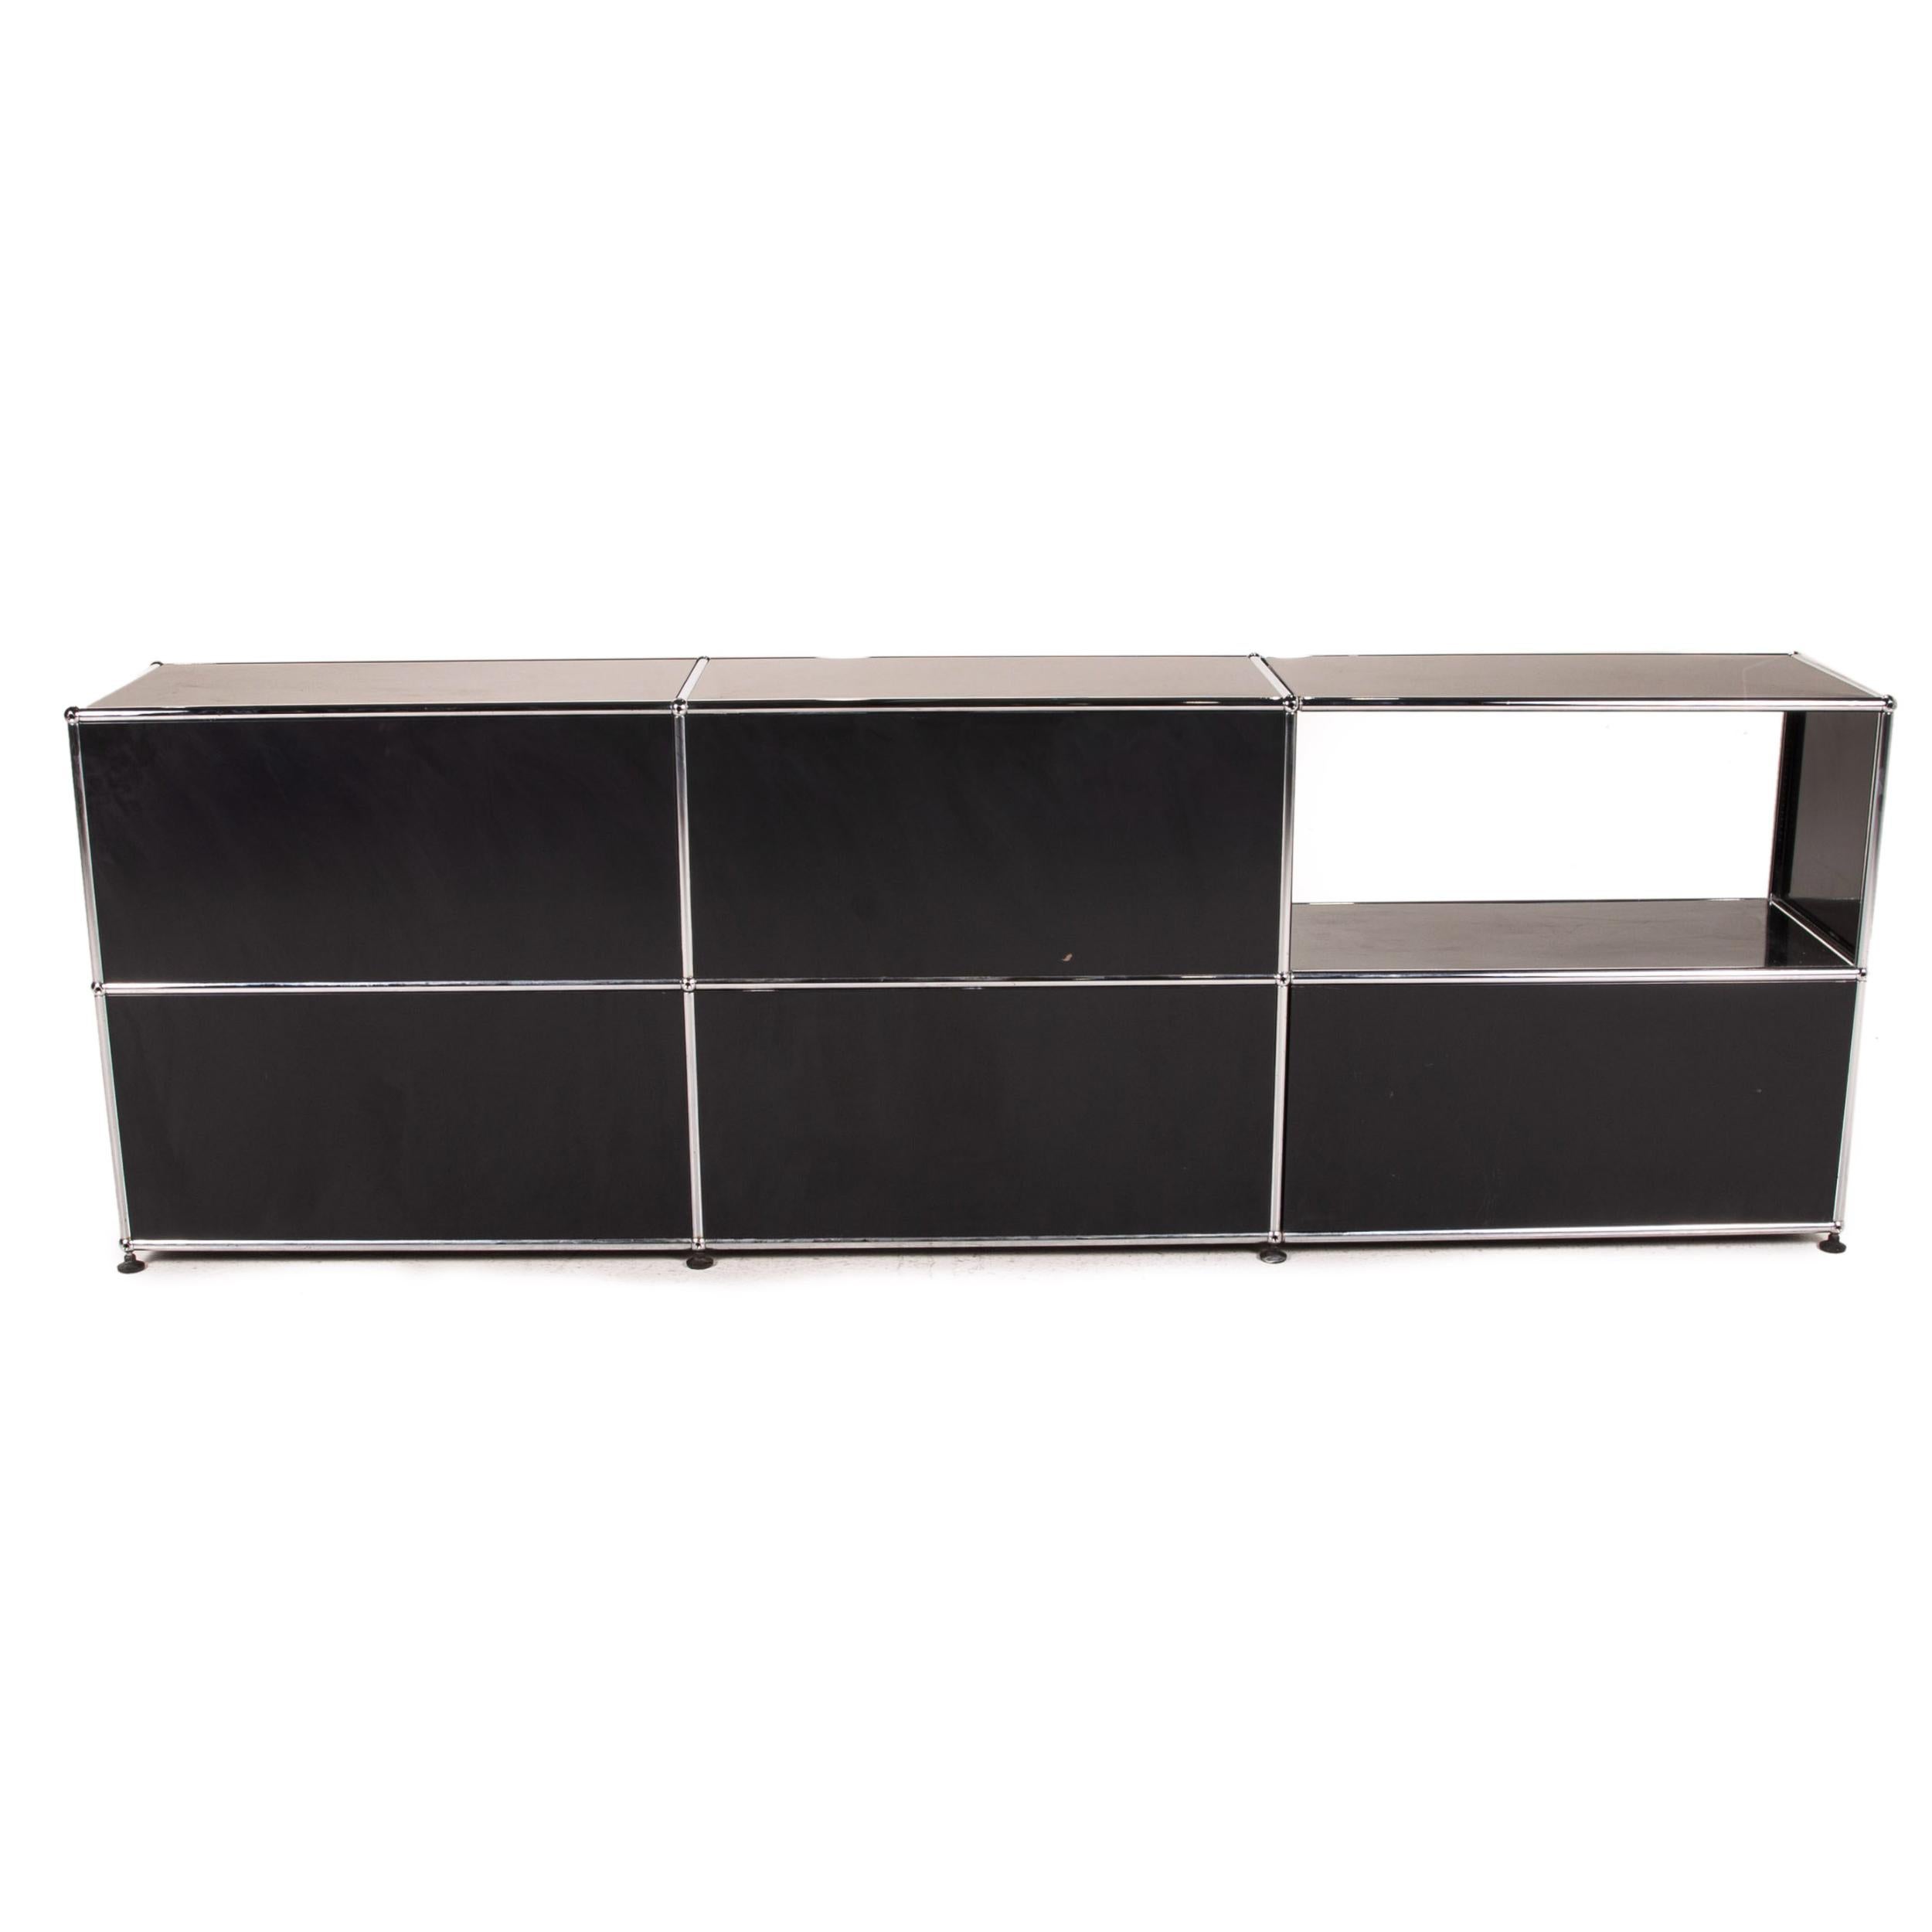 USM Haller Metal Sideboard Black Office Furniture 5